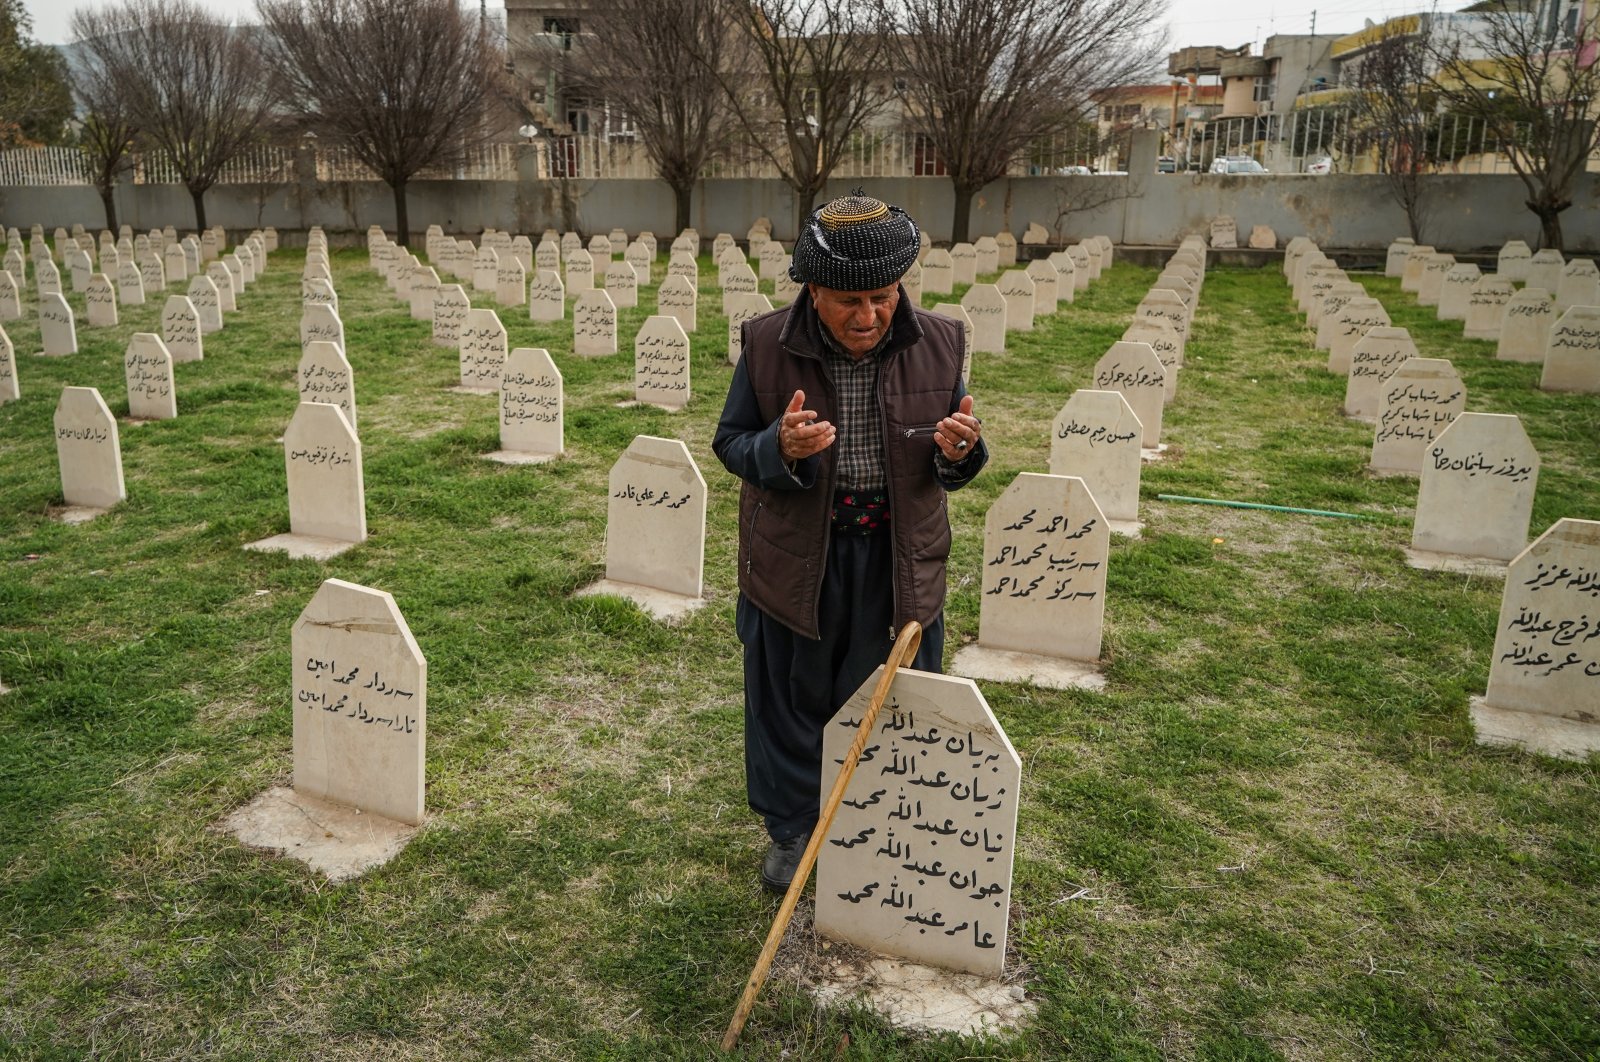 Turki rayakan peringatan 34 tahun pembantaian Halabja yang ‘keji’